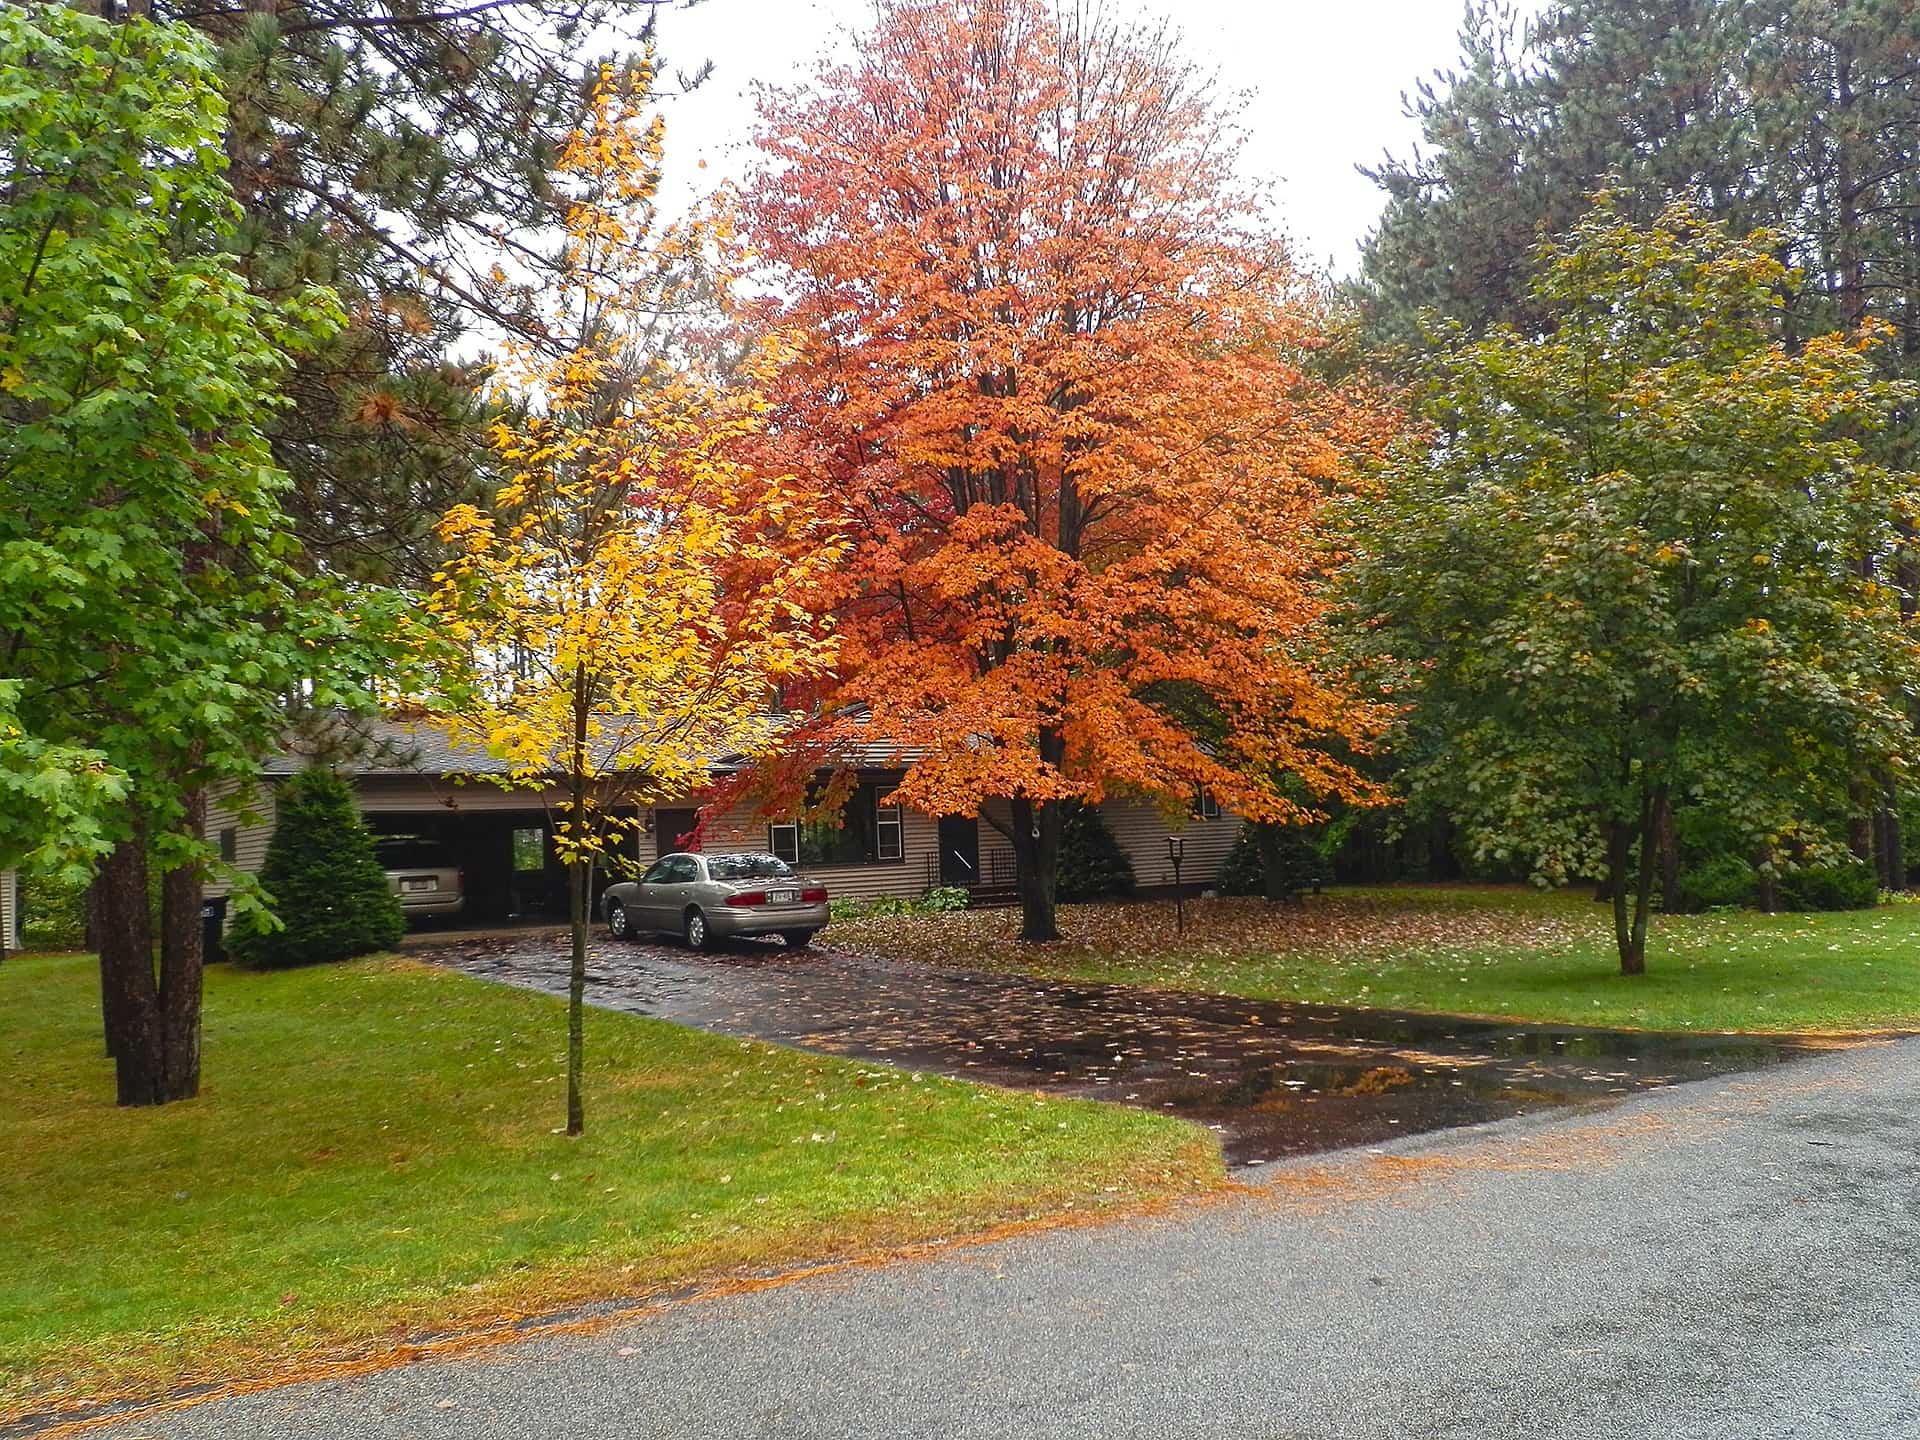 trees in yard in fall